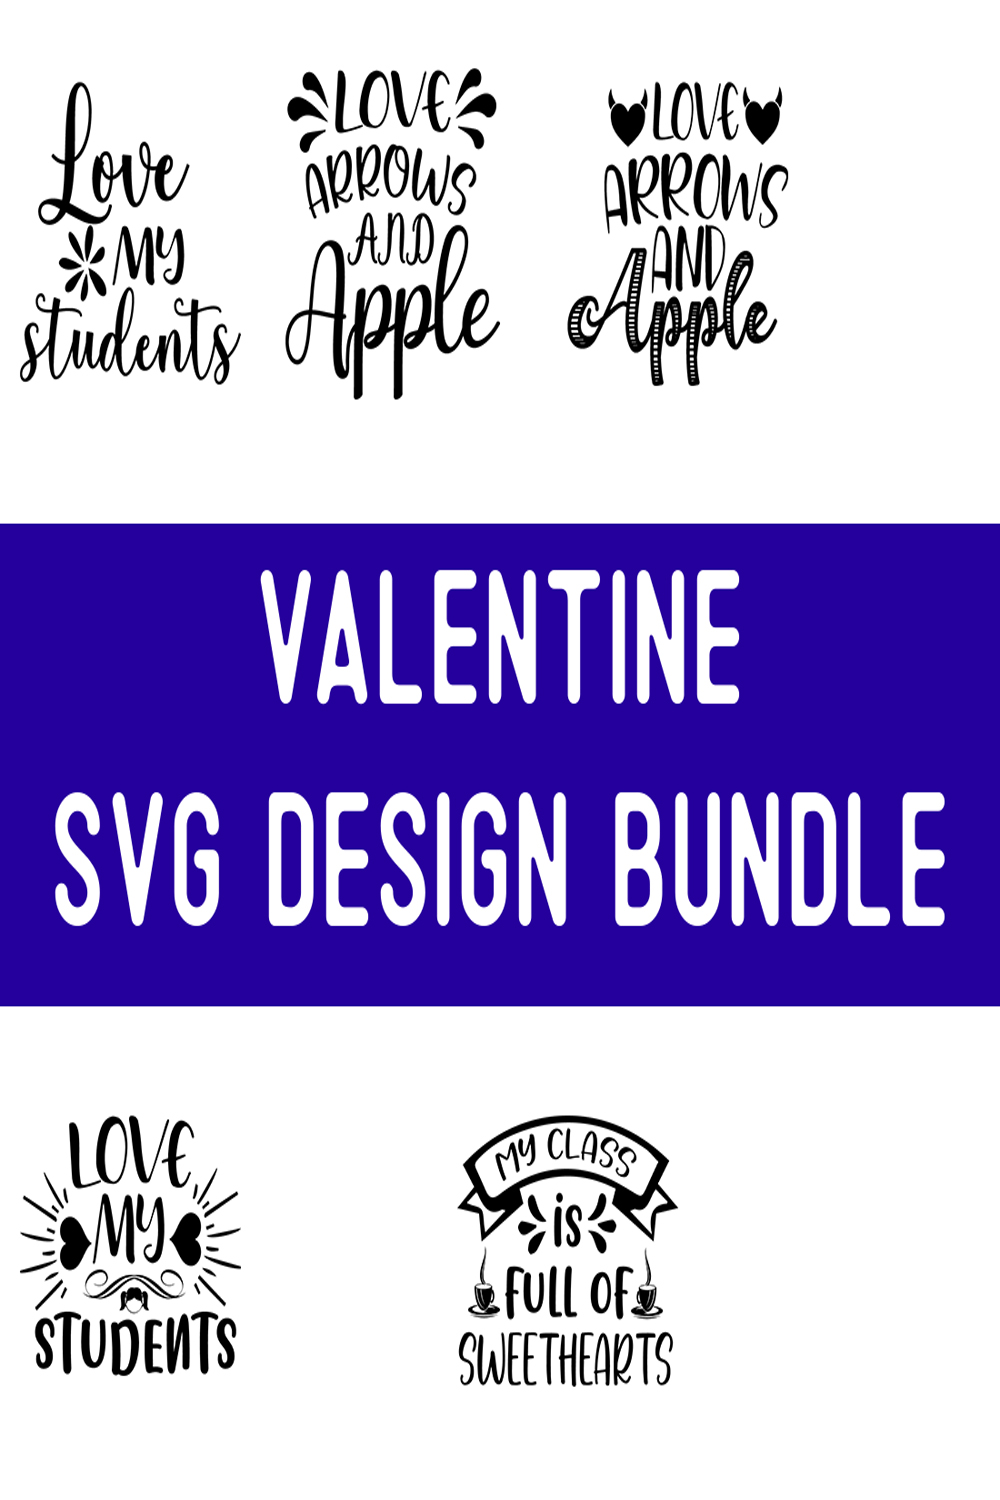 Valentine SVG Design Bundle pinterest preview image.